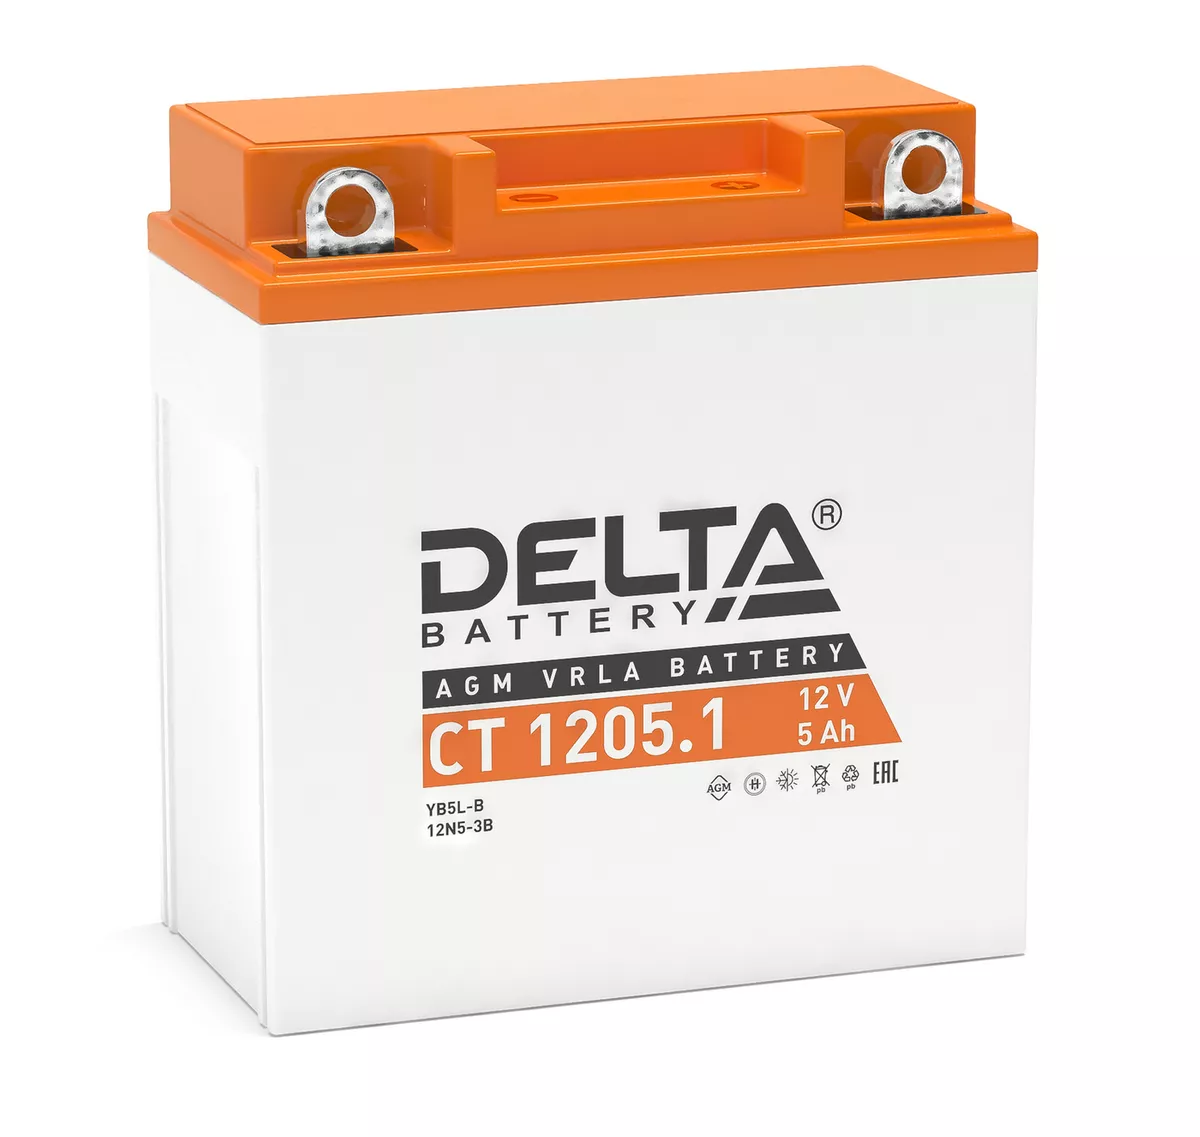 Мотоаккумулятор стартерный Delta CT 1205.1 12V 5Ah (YB5L-B, 12N5-3B)